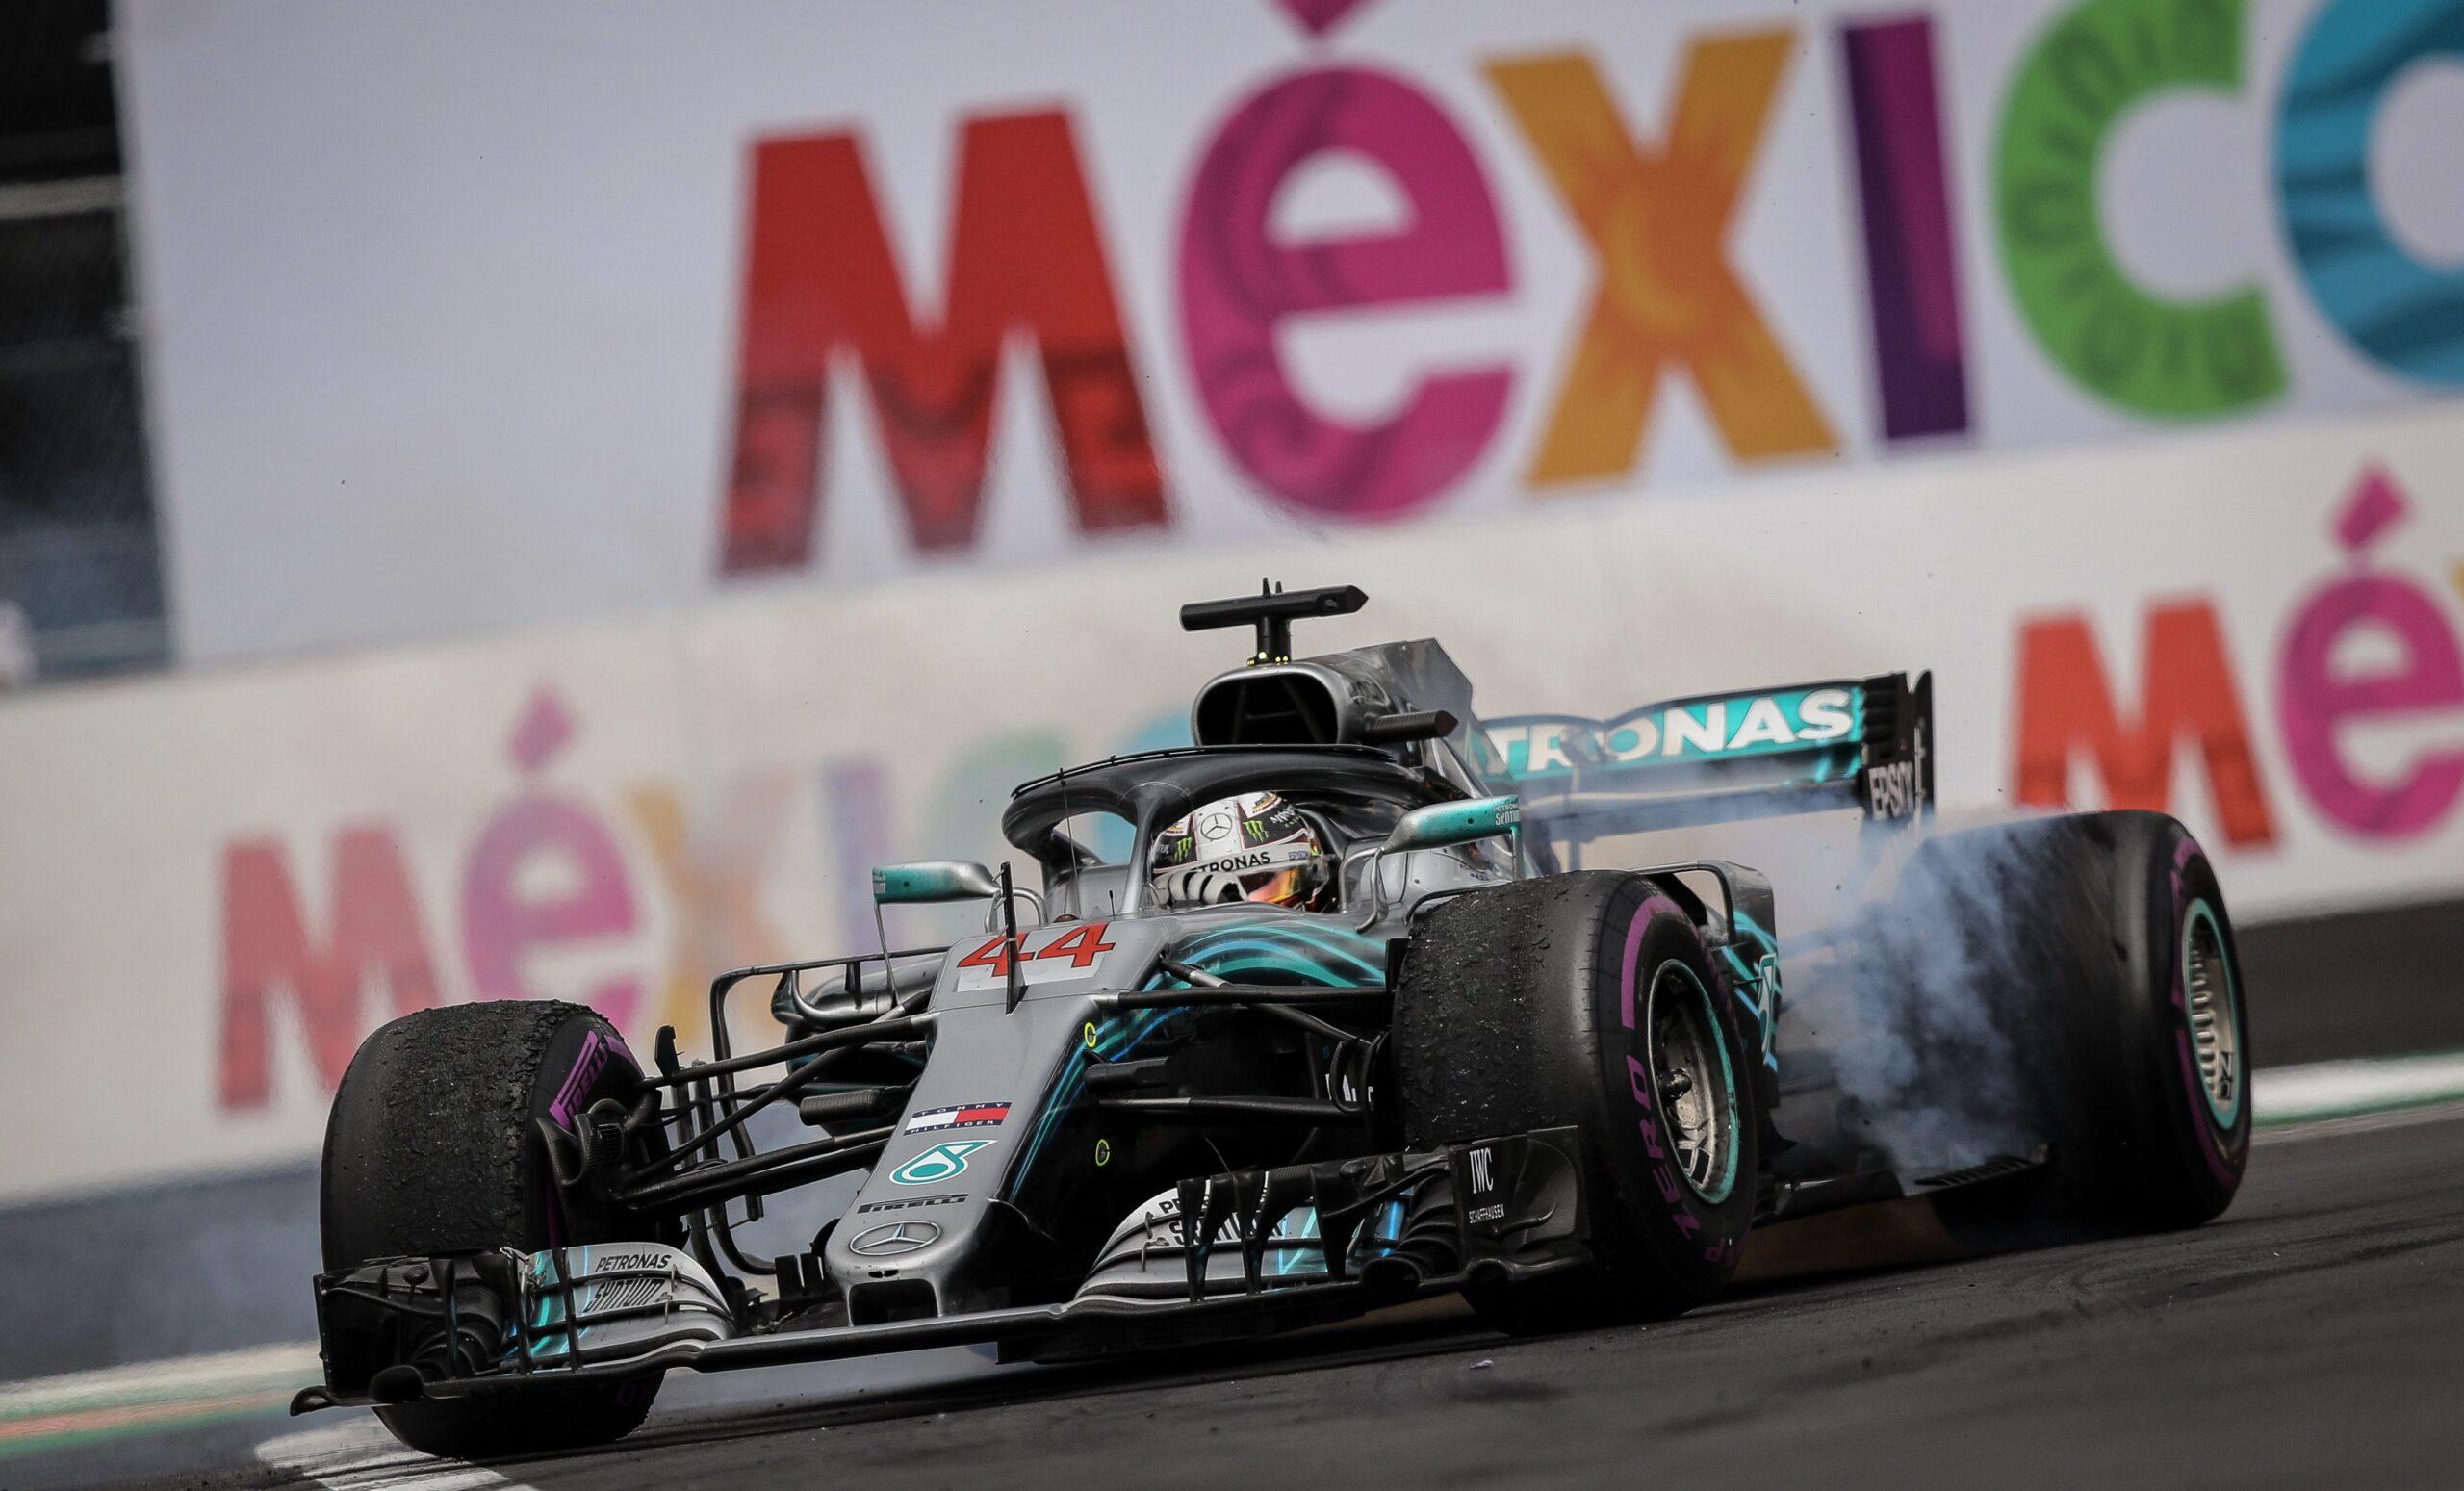 ¿Vas al Gran Premio de México? Te decimos rutas y opciones de transporte